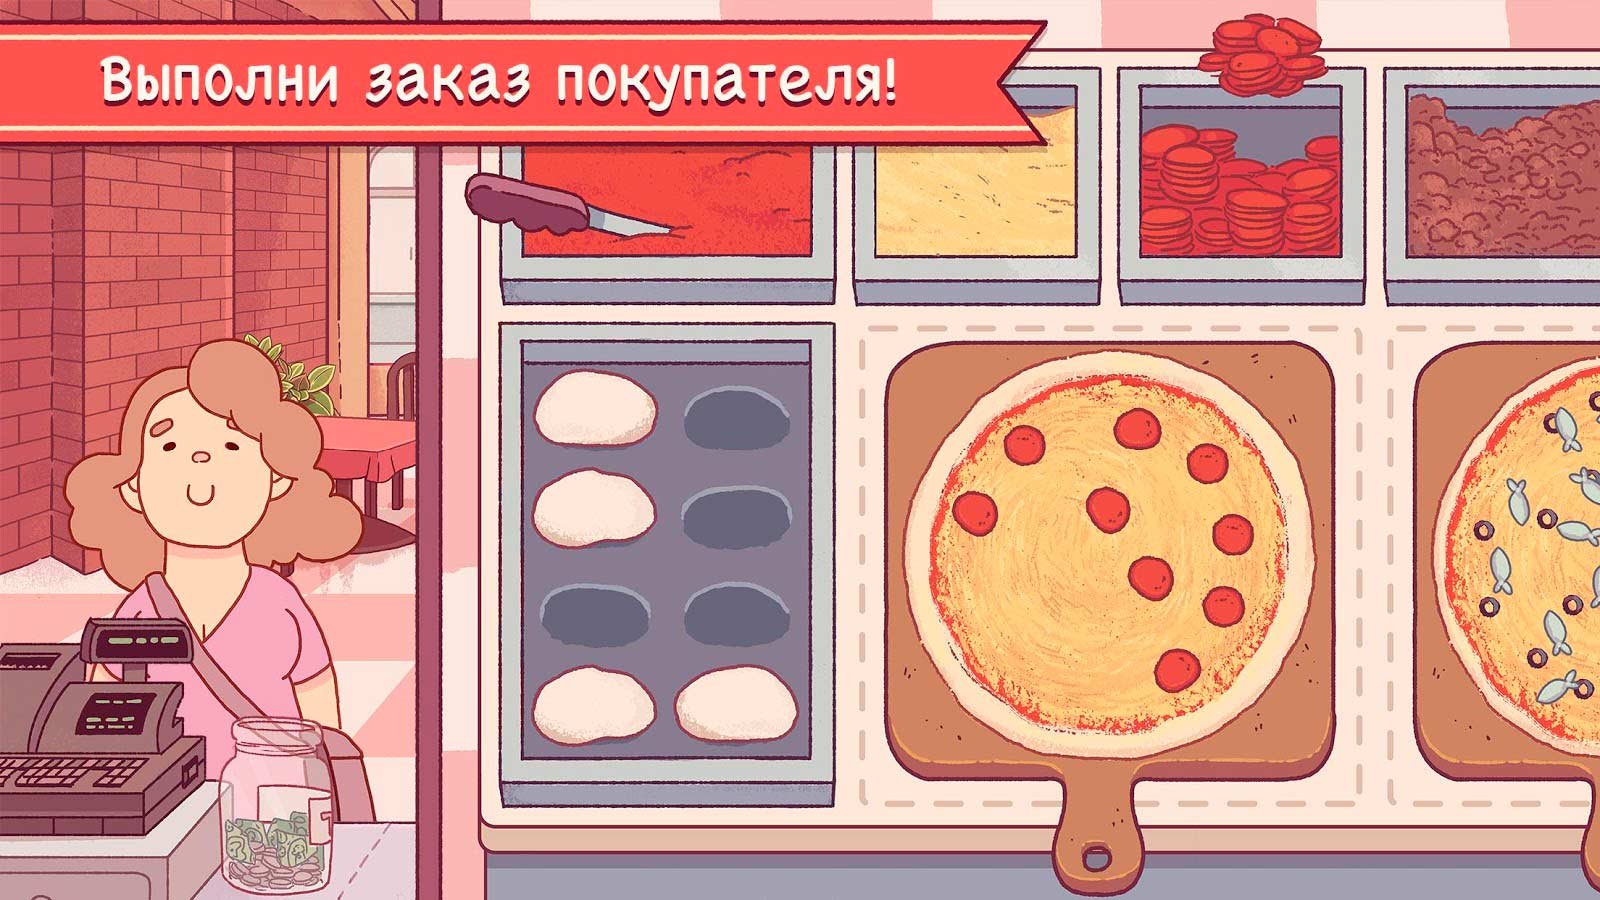 хорошая пицца игра скачать бесплатно на андроид фото 2